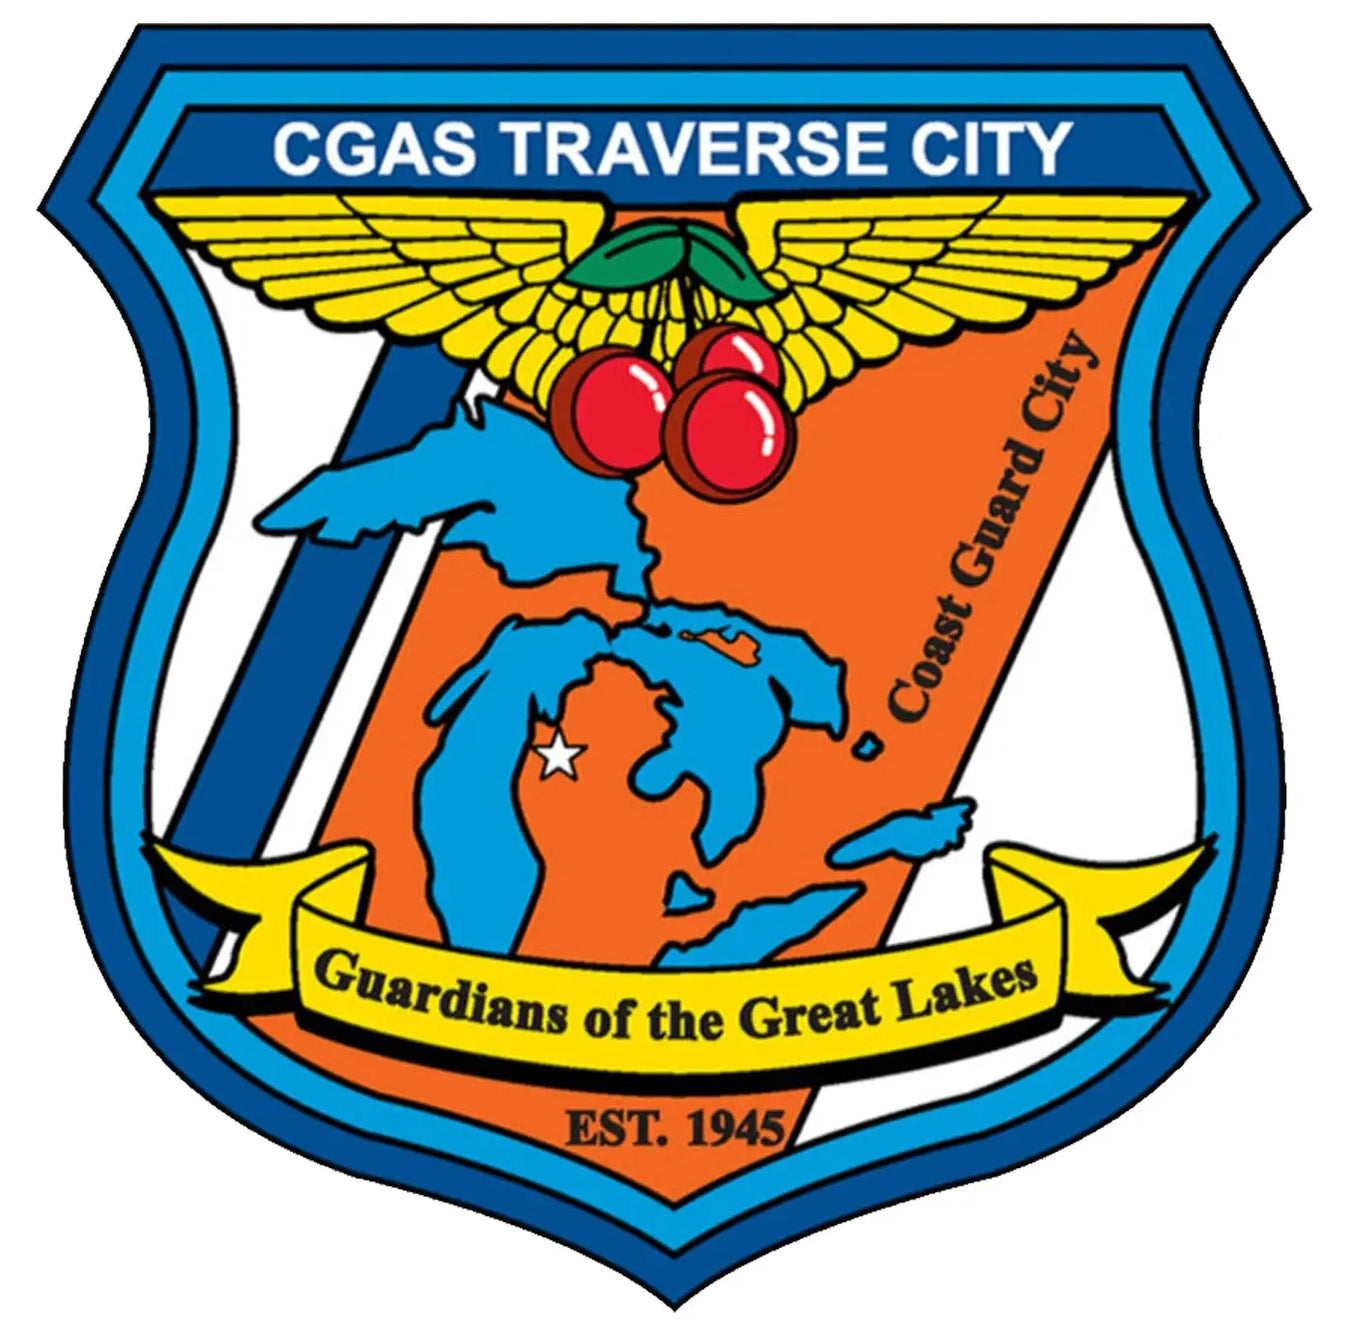 CGAS Traverse City